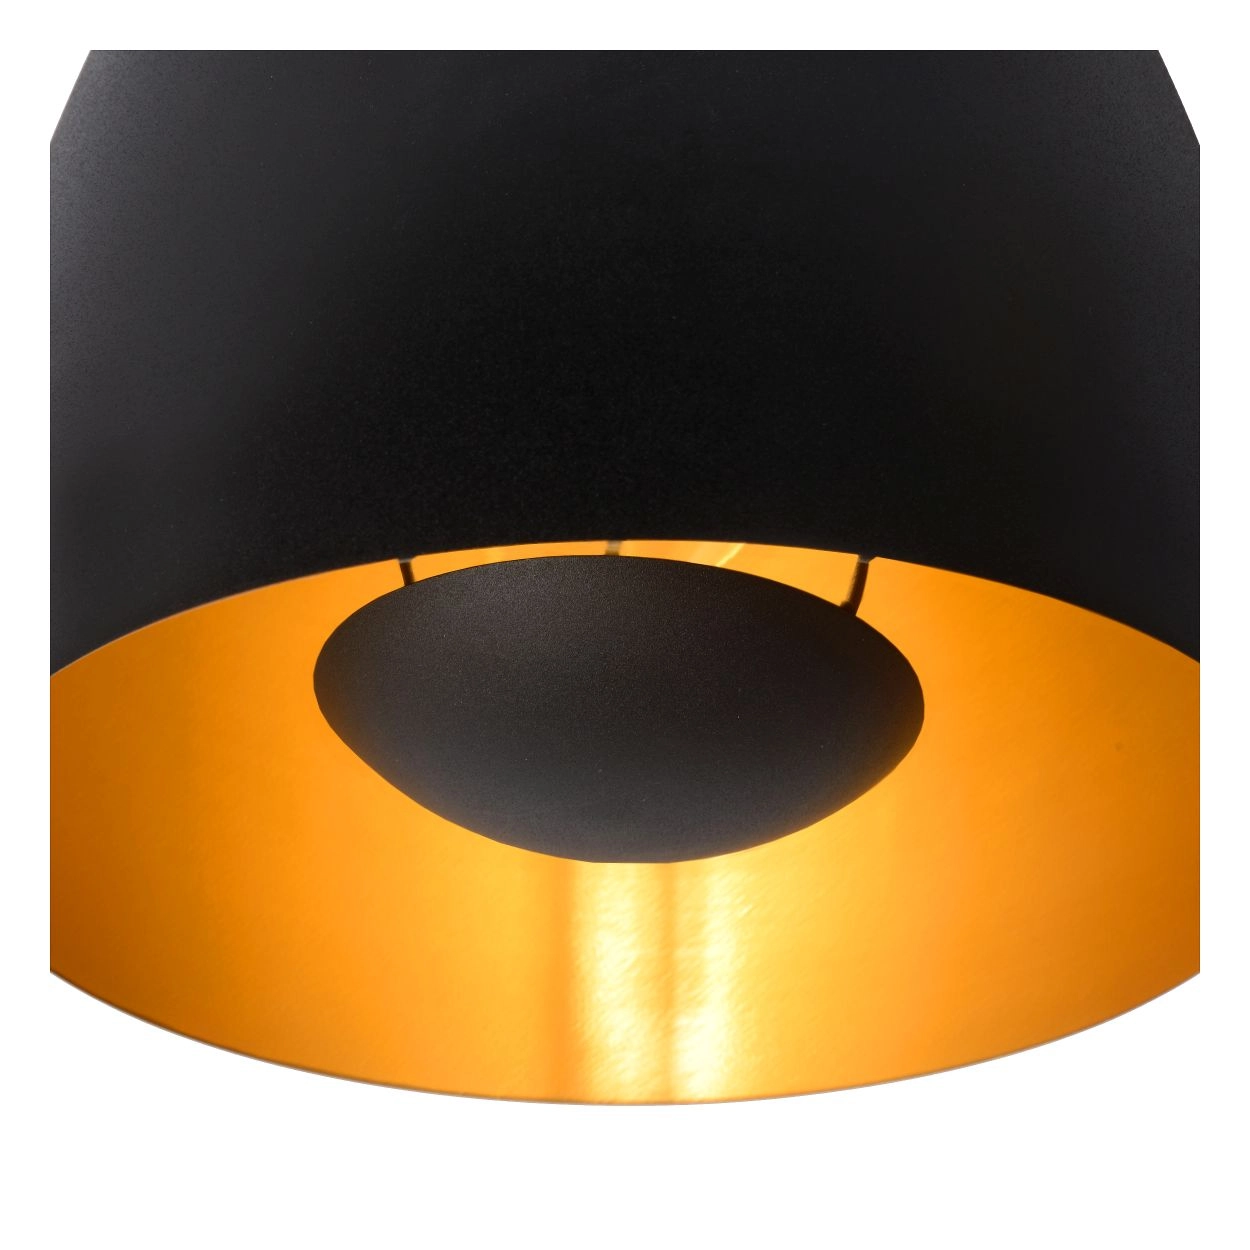 LU 30188/01/30 Lucide NOLAN - Flush ceiling light - Ø 24 cm - 1xE27 - Black